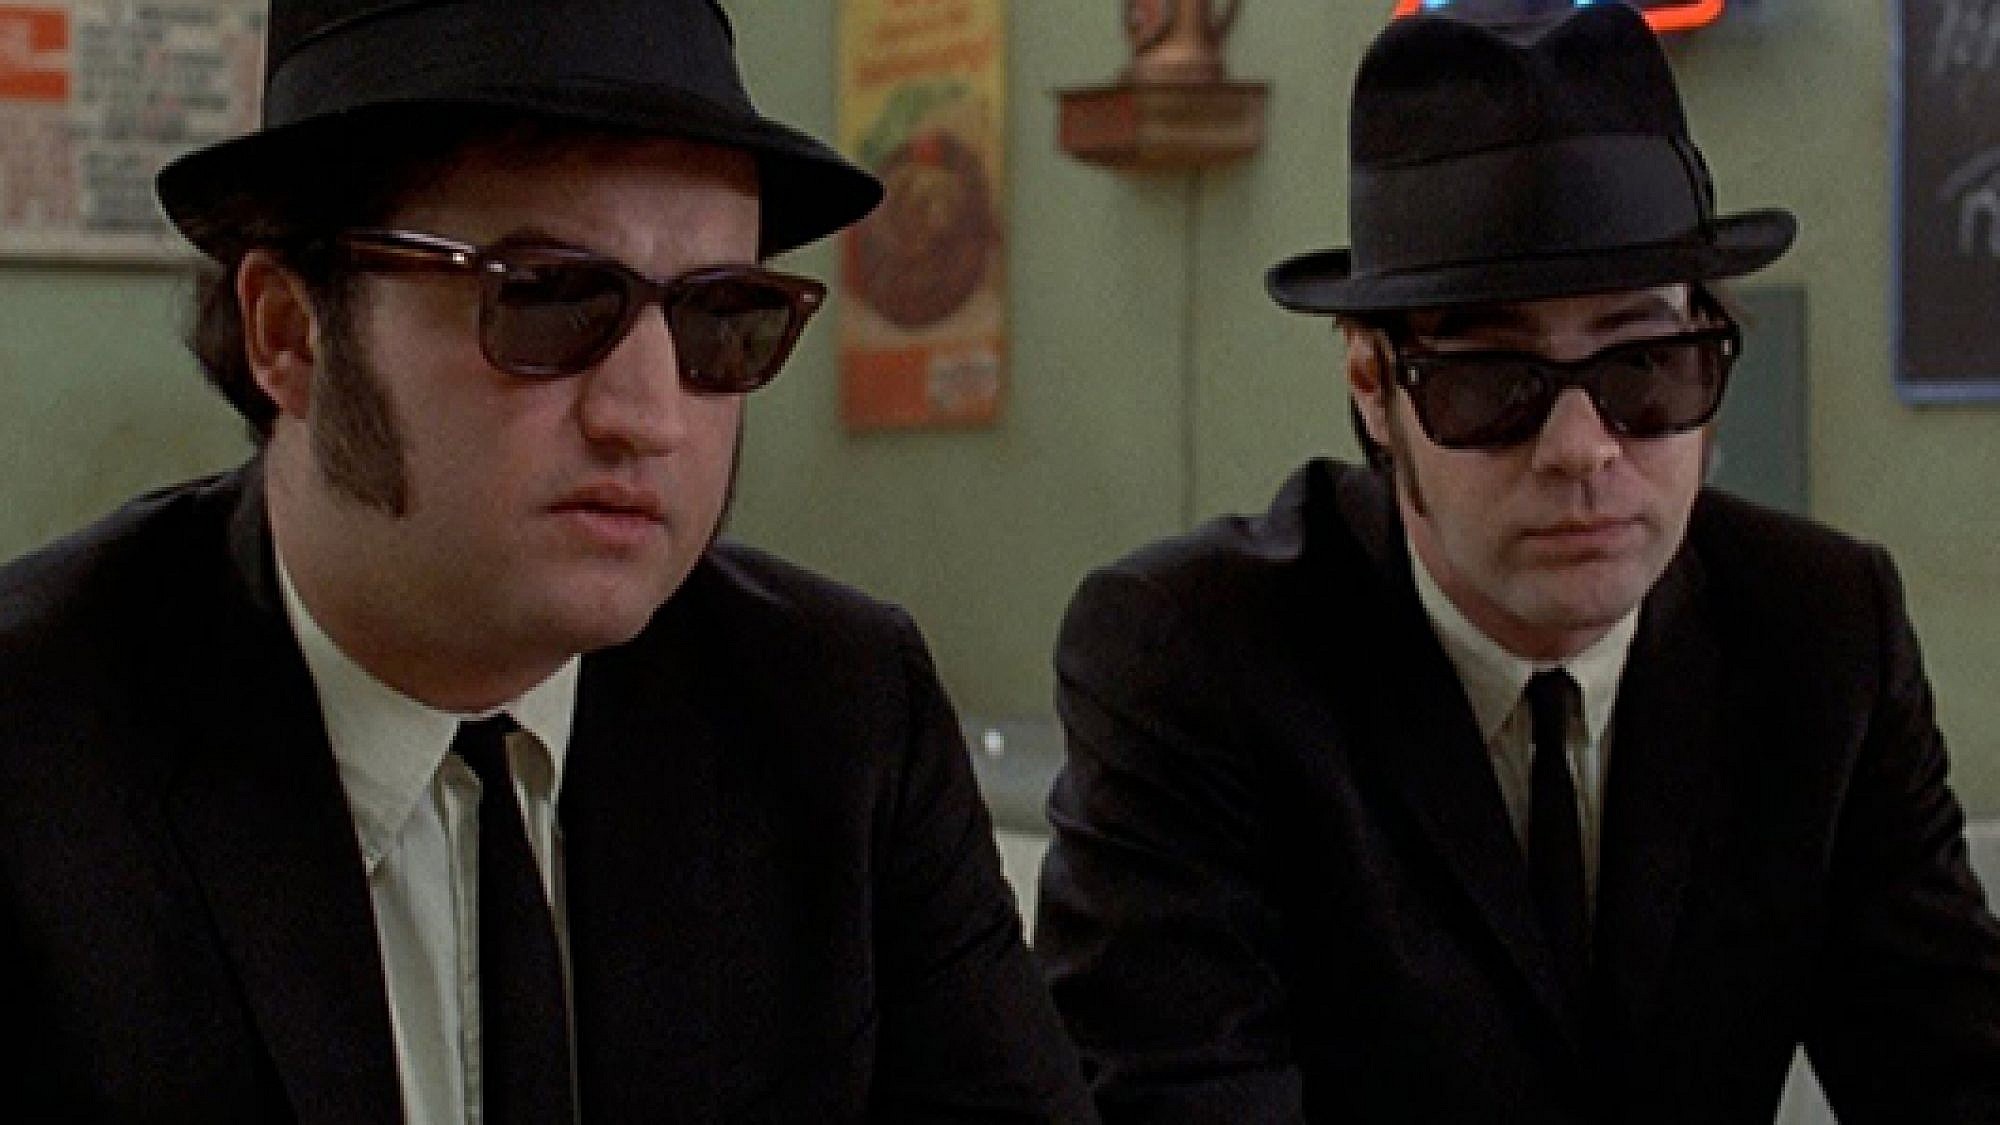 ג'ון בלושי ודן אקרויד בסרט "האחים בלוז". צילום מסך מתוך הסרט